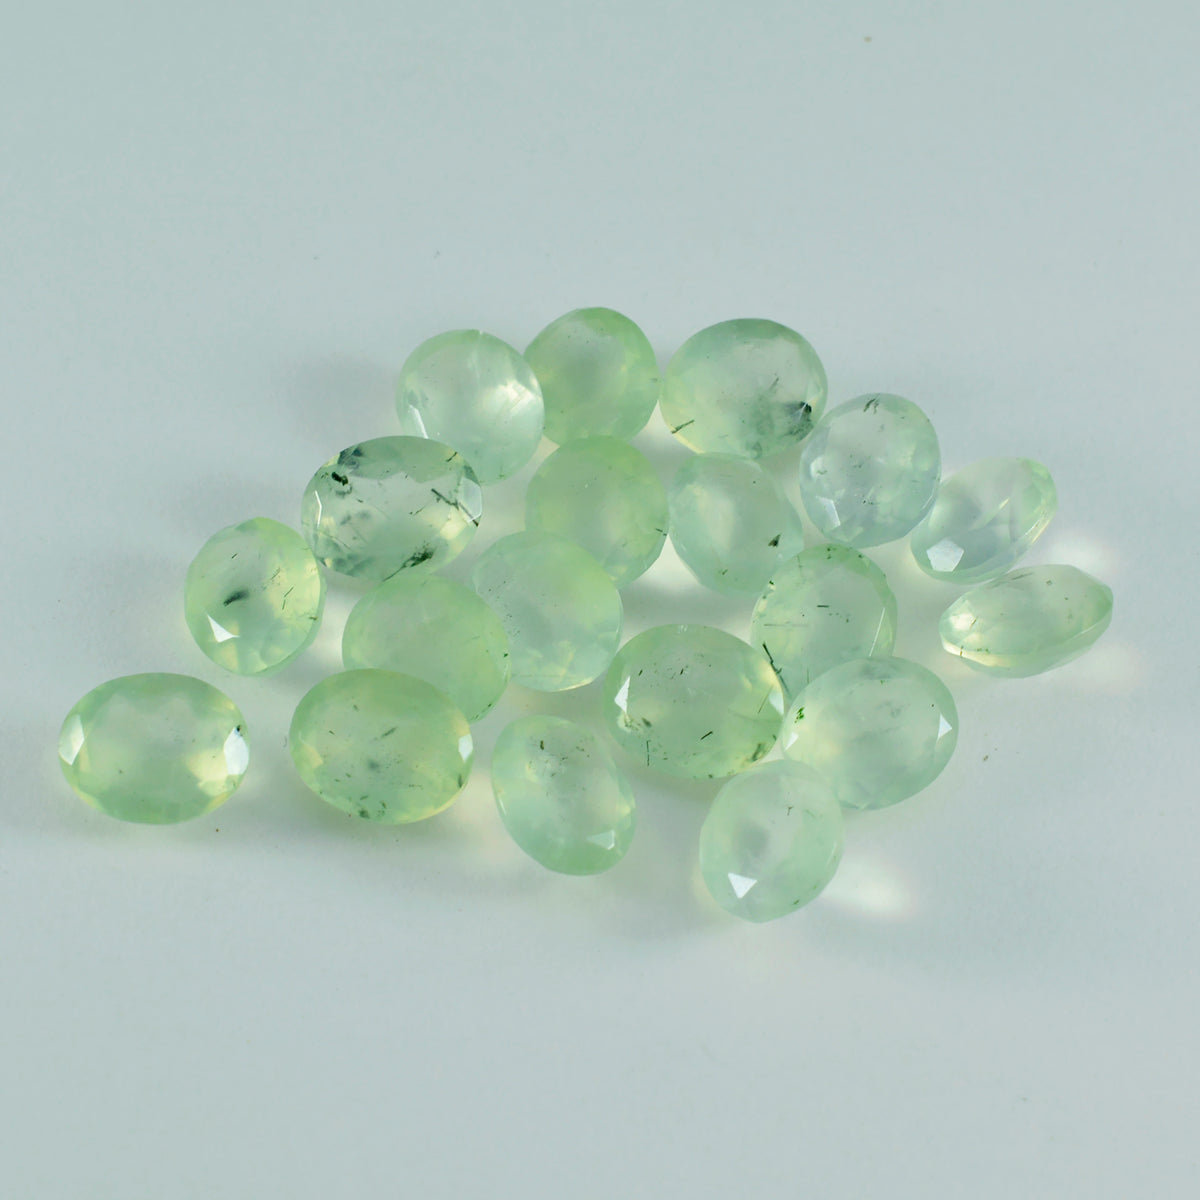 riyogems 1 pieza de prehnita verde facetada de 5x7 mm con forma ovalada, piedra preciosa de calidad atractiva